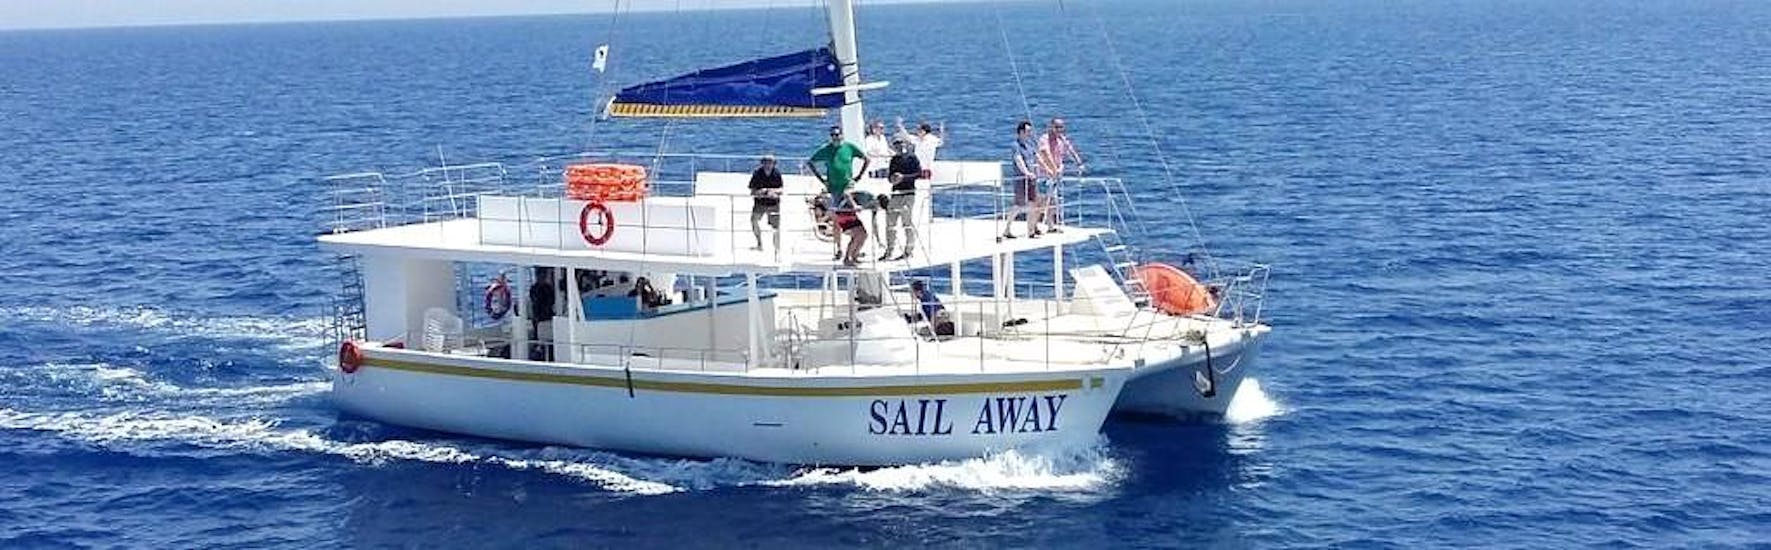 Foto van de Sail Away catamaran die door Relax-Cruises Limassol wordt gebruikt voor de boottochten.